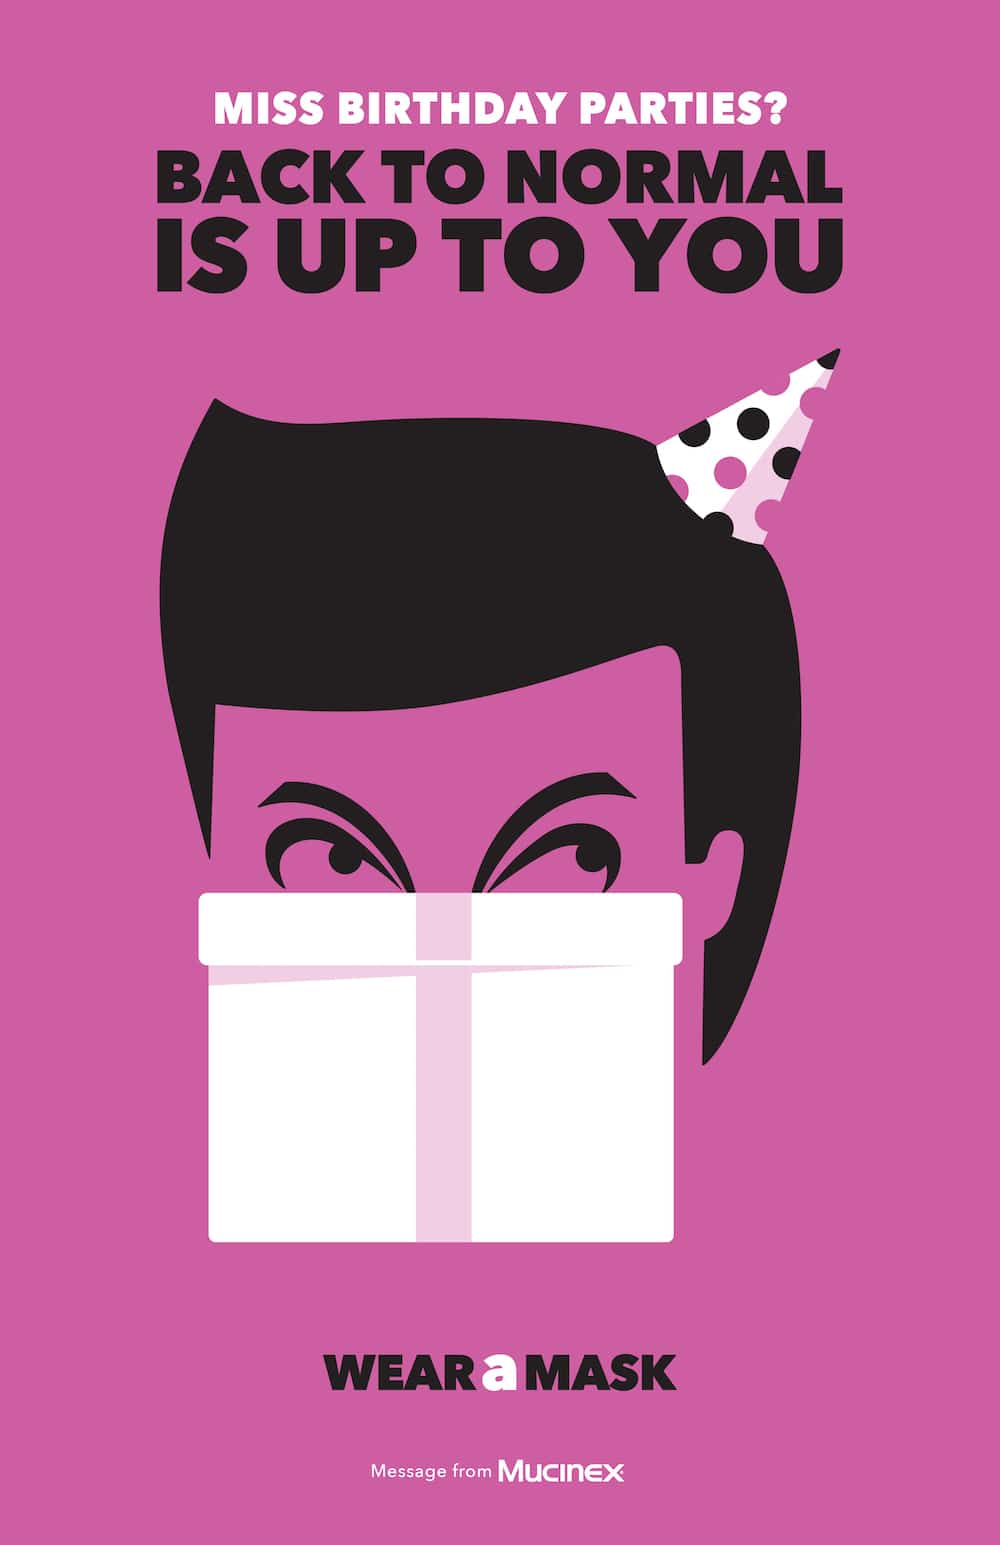 Plakat zum Maske tragen von Illustrator Noma Bar